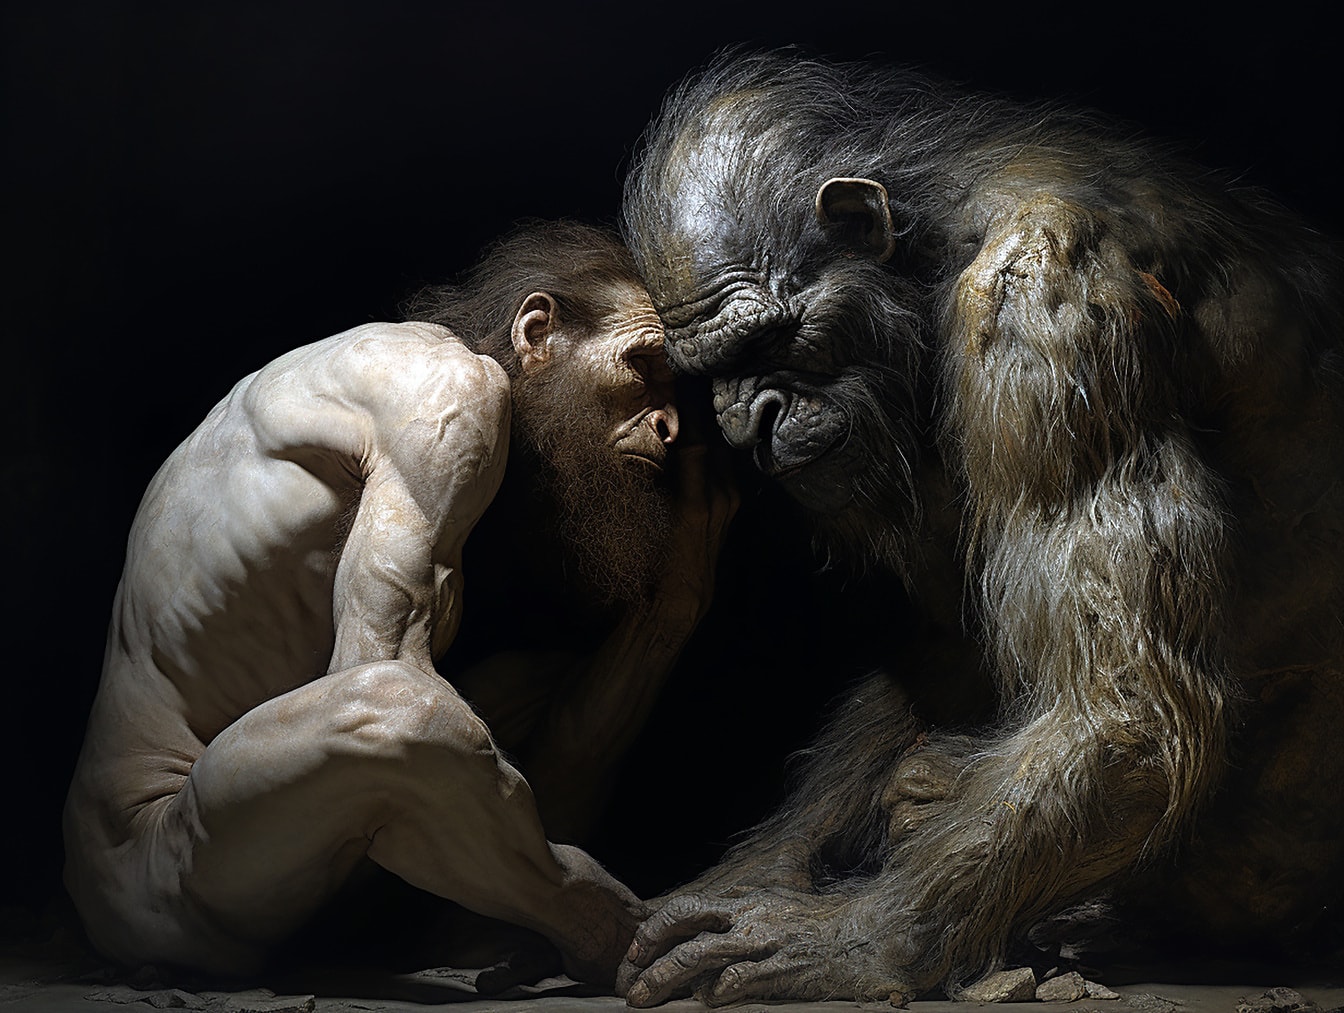 Evolución del Neandertal humano prehistórico a partir de un primate